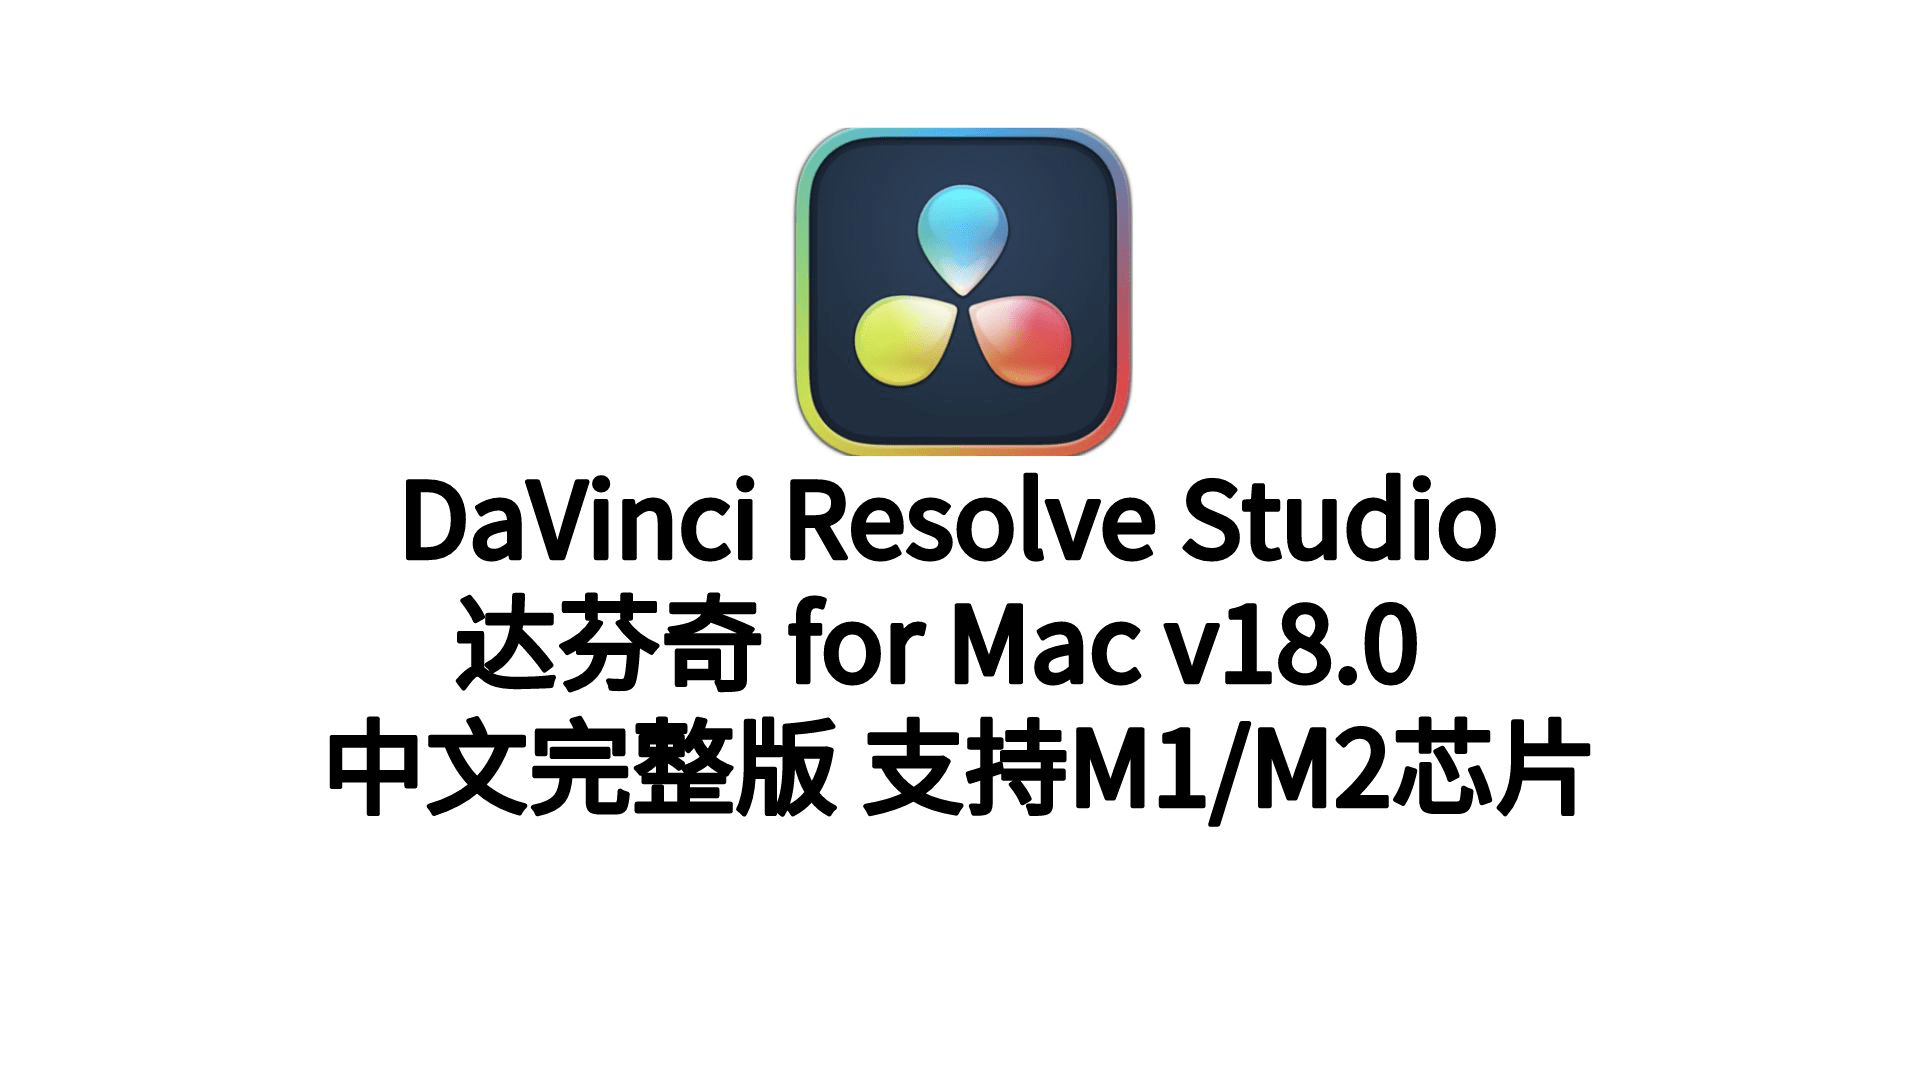 老板专业调音器下载苹果版:DaVinci Resolve Studio18formac(达芬奇中文破解版)下载安装支持M1/M2以及Win